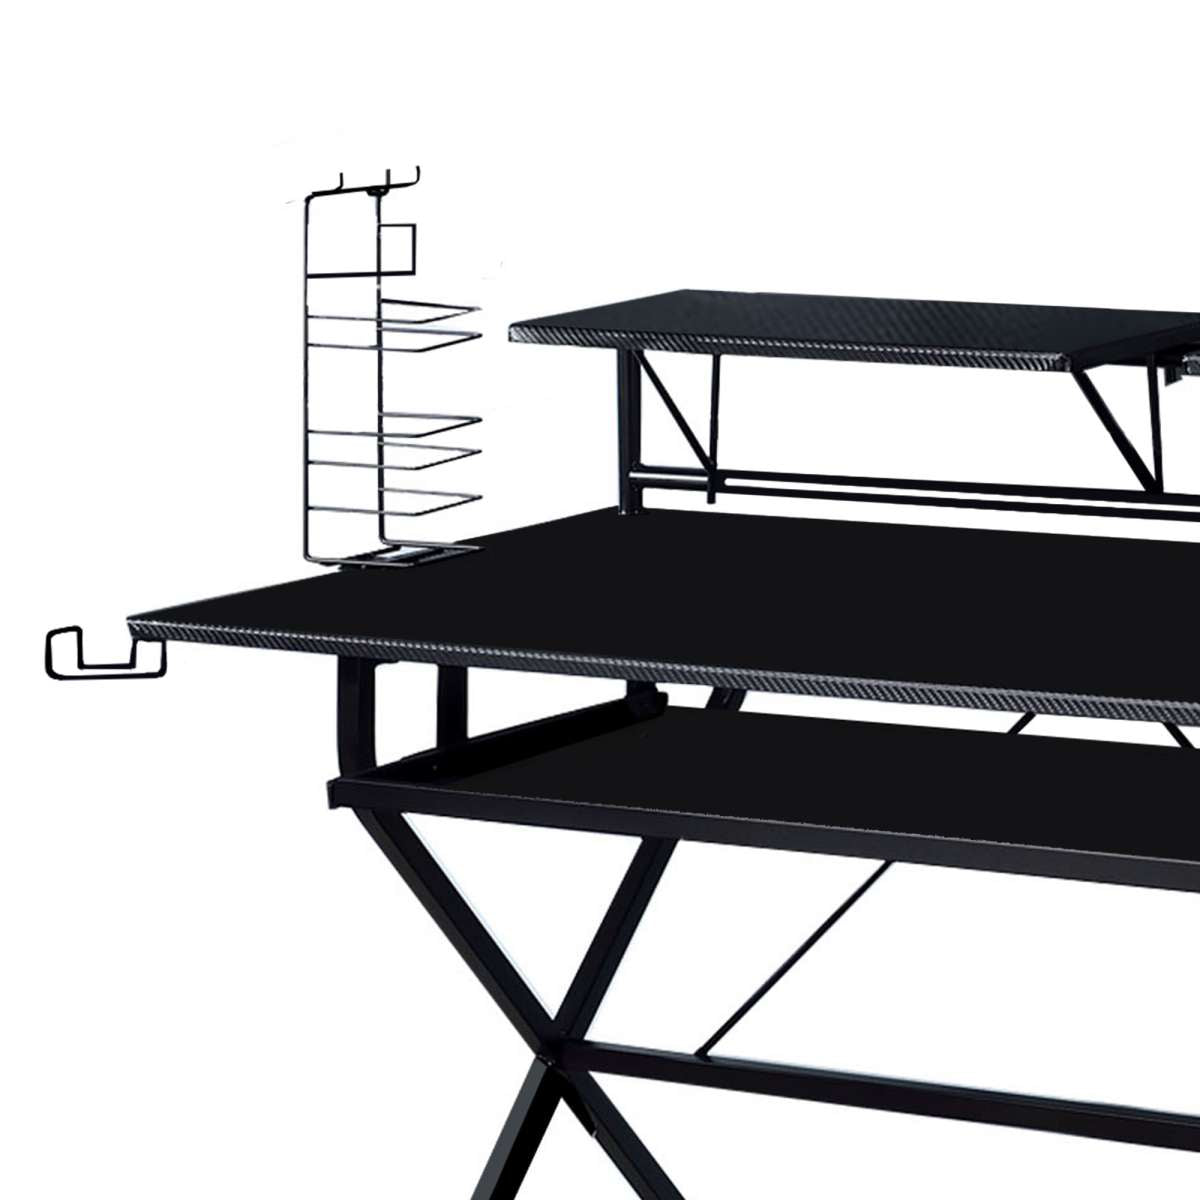 Tubular Metal Frame Computer Desk With 2 Shelves And Cup Holder, Black By Benzara | Desks |  Modishstore  - 4